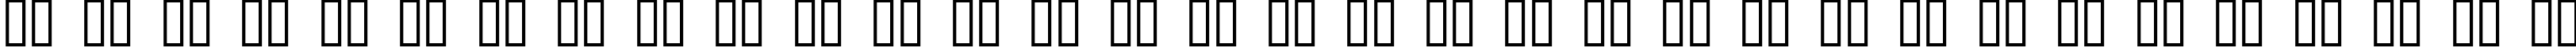 Пример написания русского алфавита шрифтом Curlmudgeon